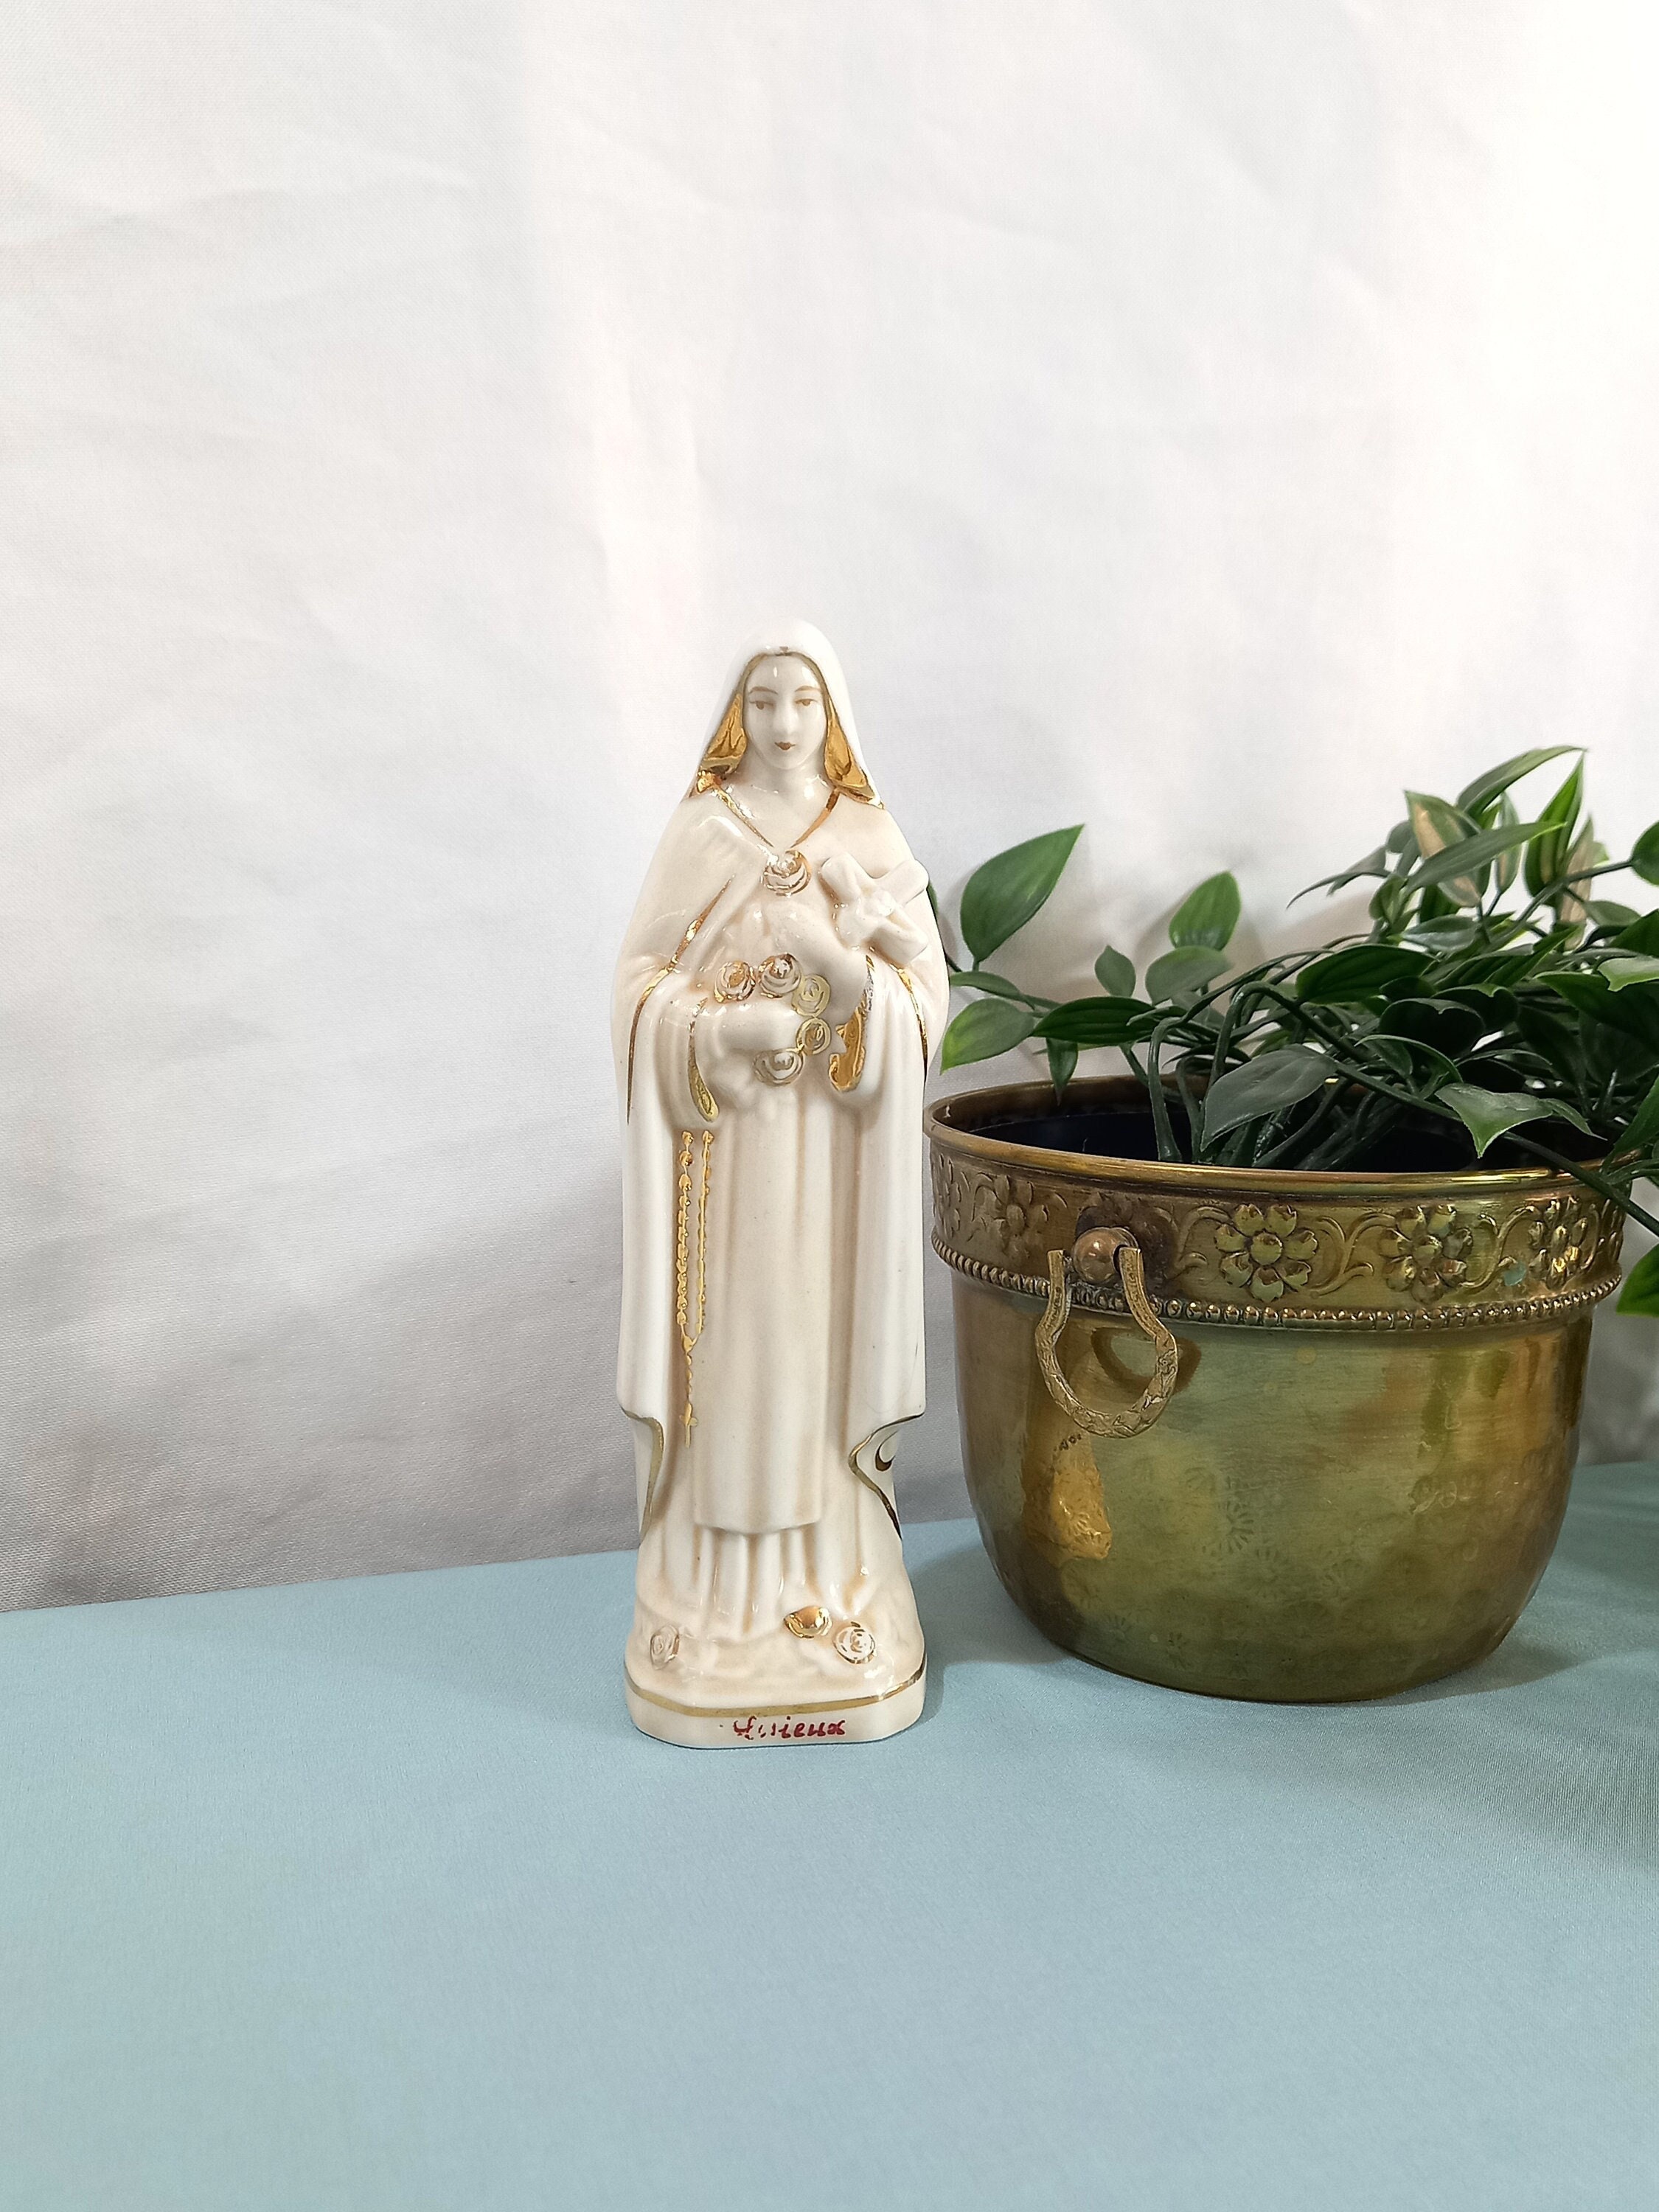 6.22 Porcelaine Sainte Thérèse de Lisieux Statue - Vintage Relique Manteau Catholique Statue